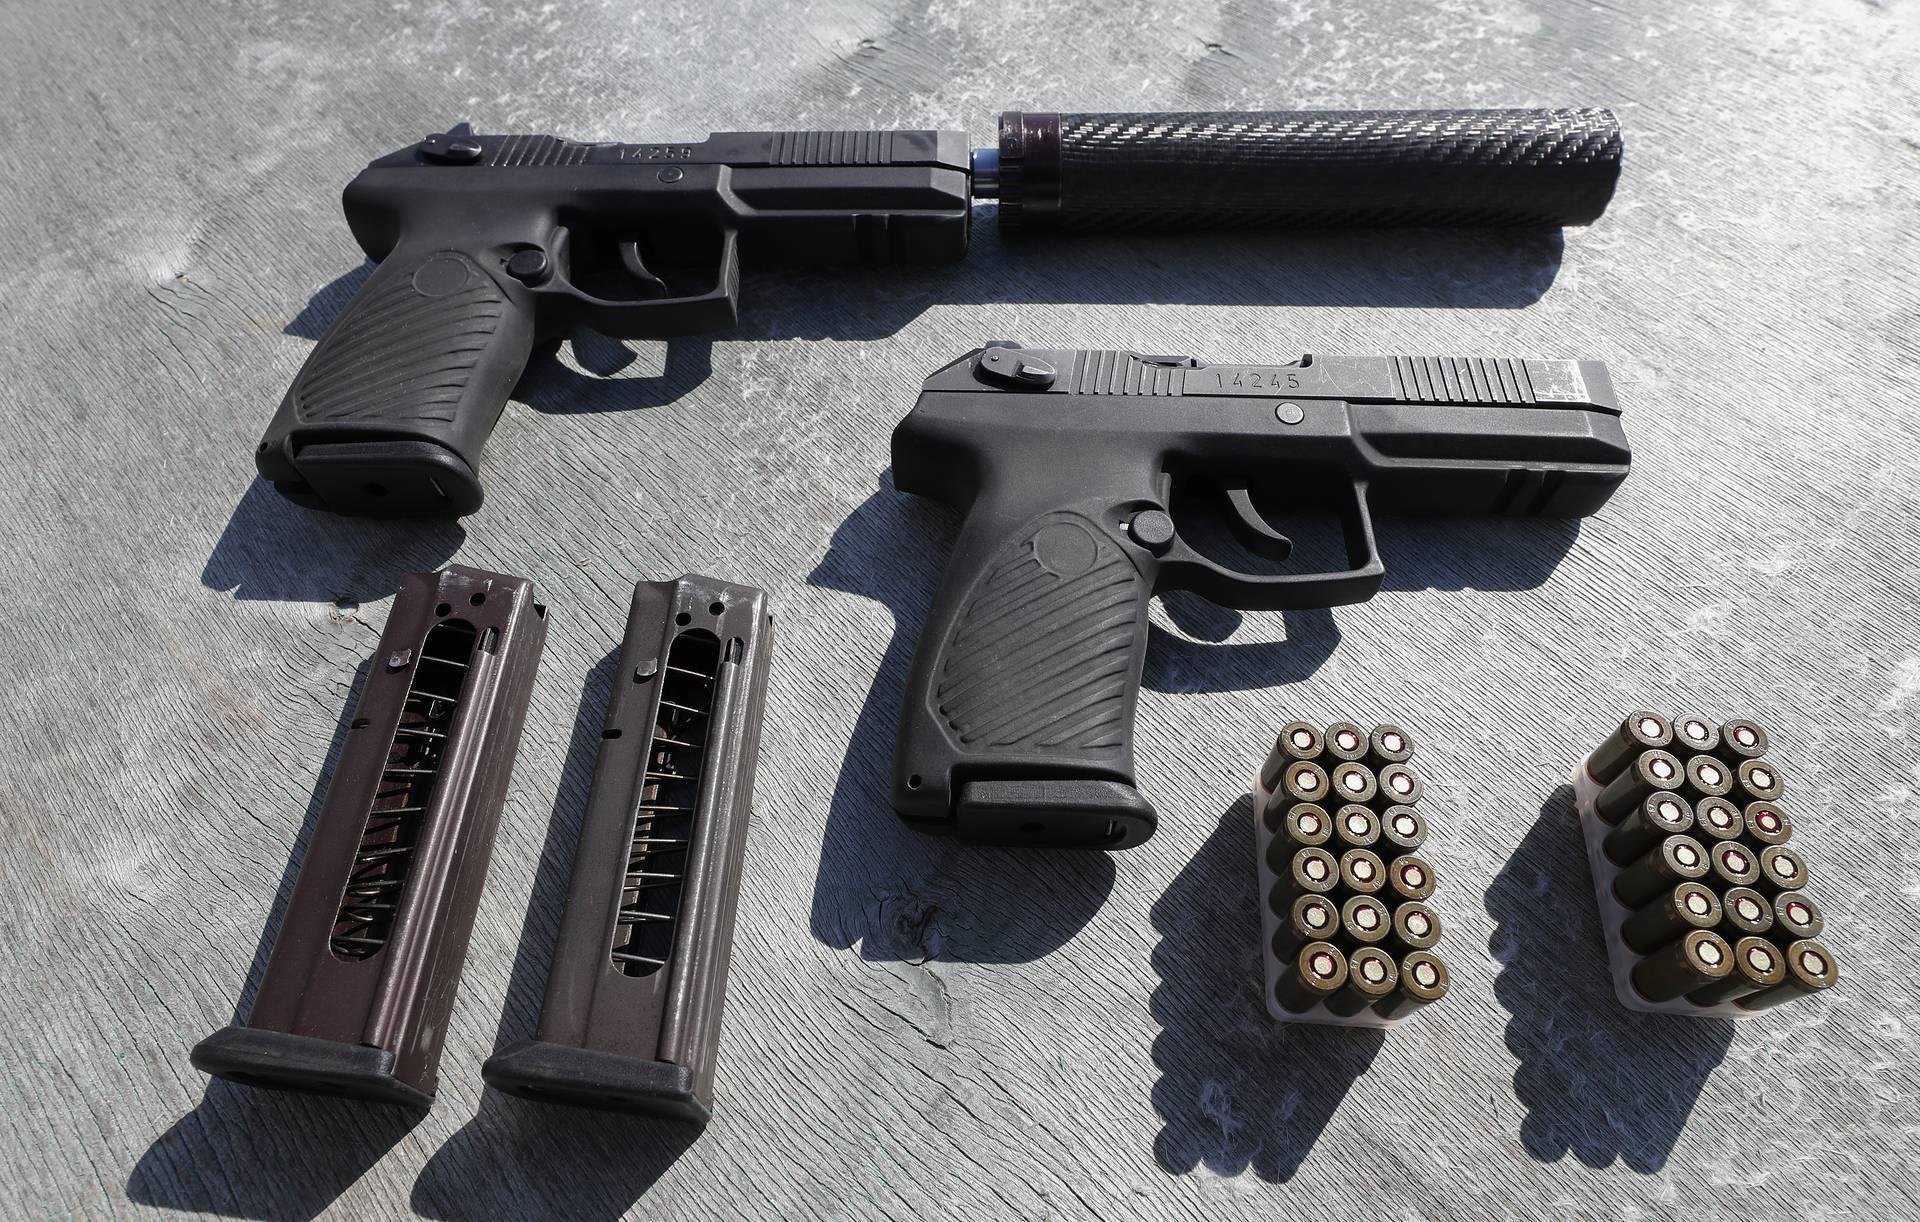 Новый пистолет "удав" - сравнение с макаровым и другими популярными моделями пистолетов.